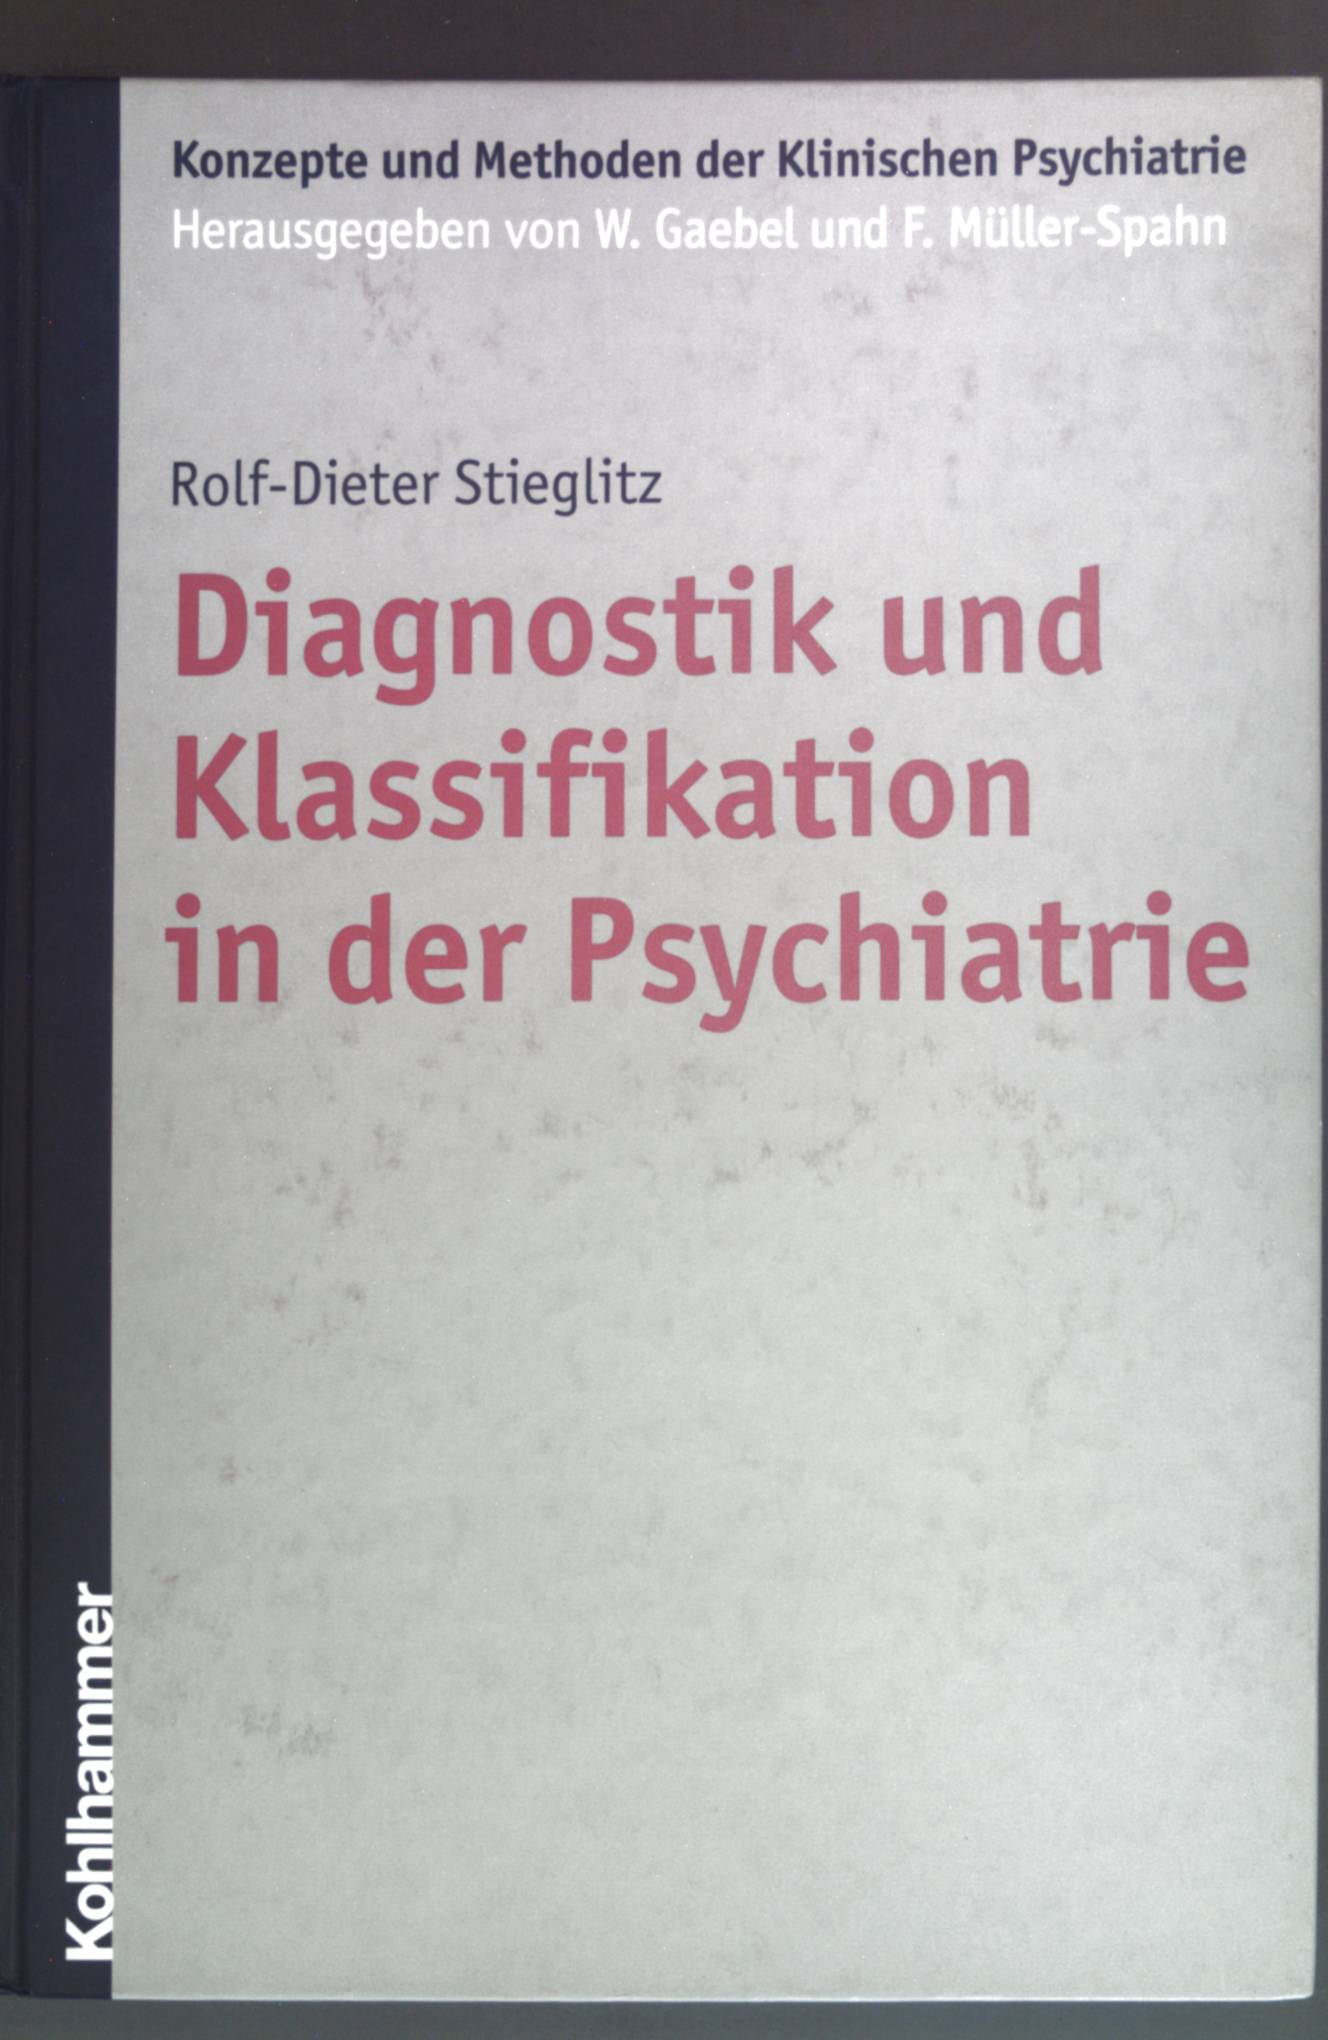 Diagnostik und Klassifikation in der Psychiatrie. Konzepte und Methoden der klinischen Psychiatrie 1. Aufl. - Stieglitz, Rolf-Dieter